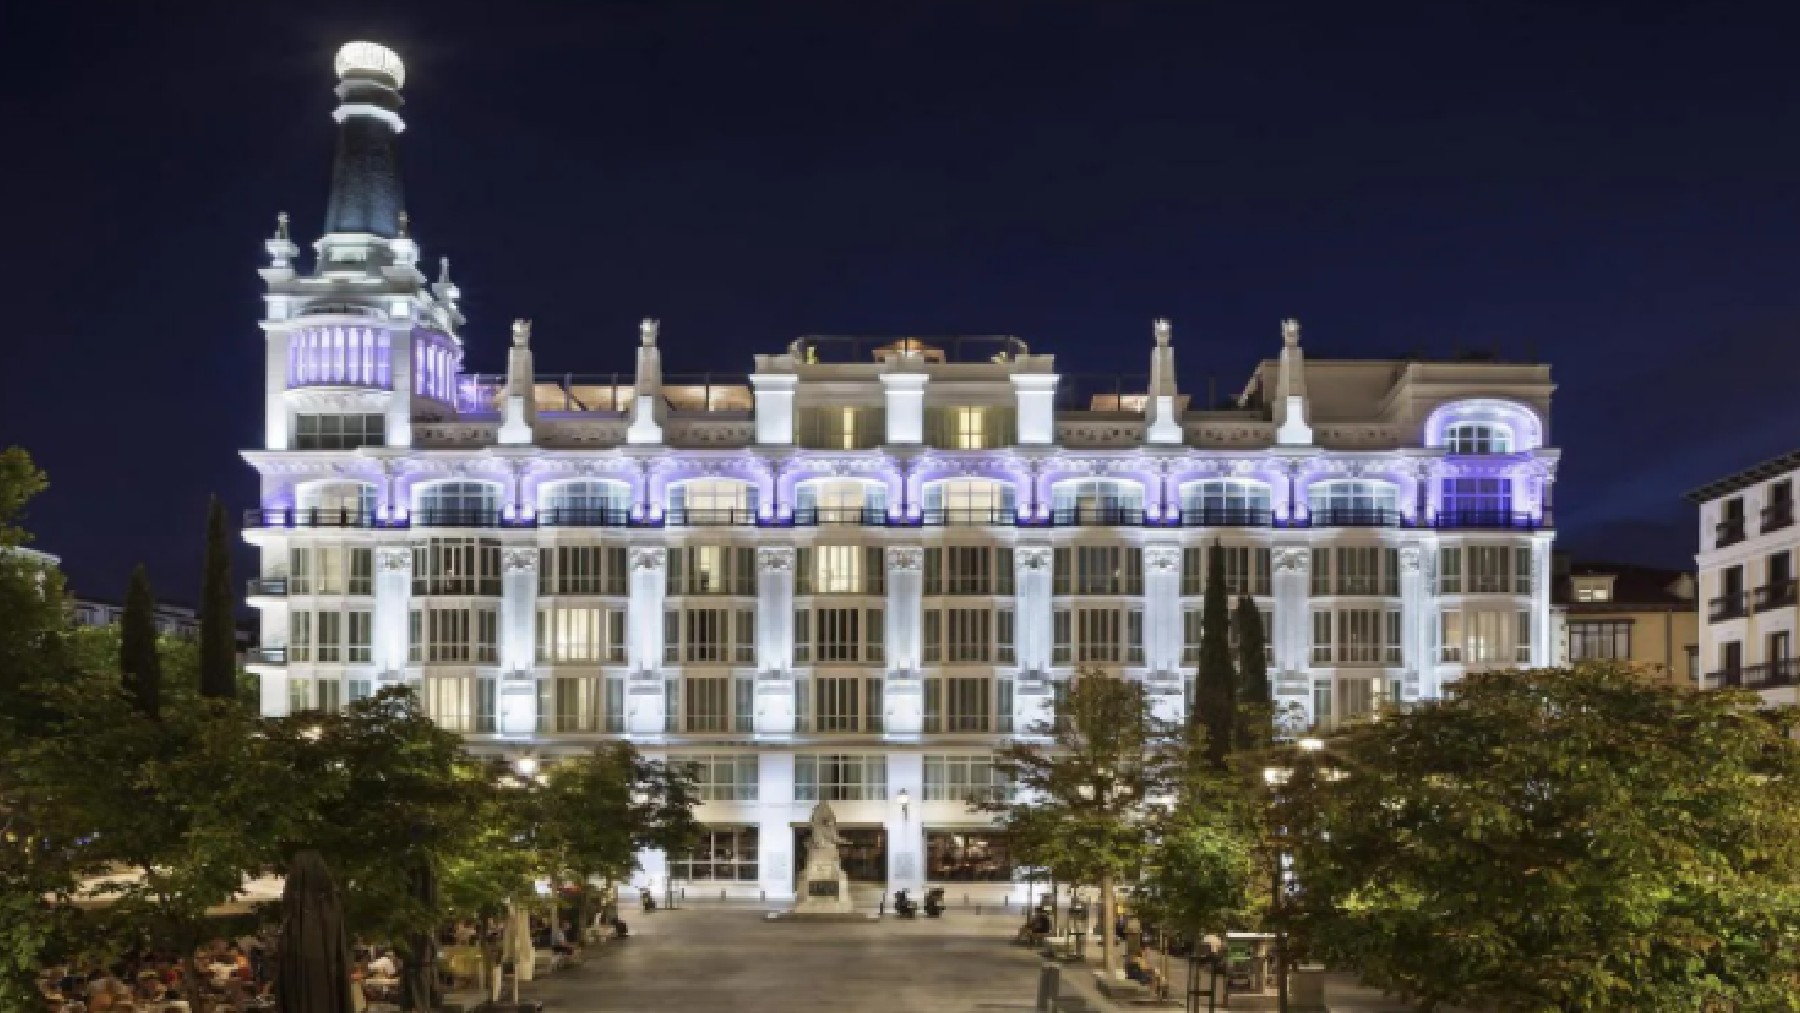 Hotel Meliá en Madrid.